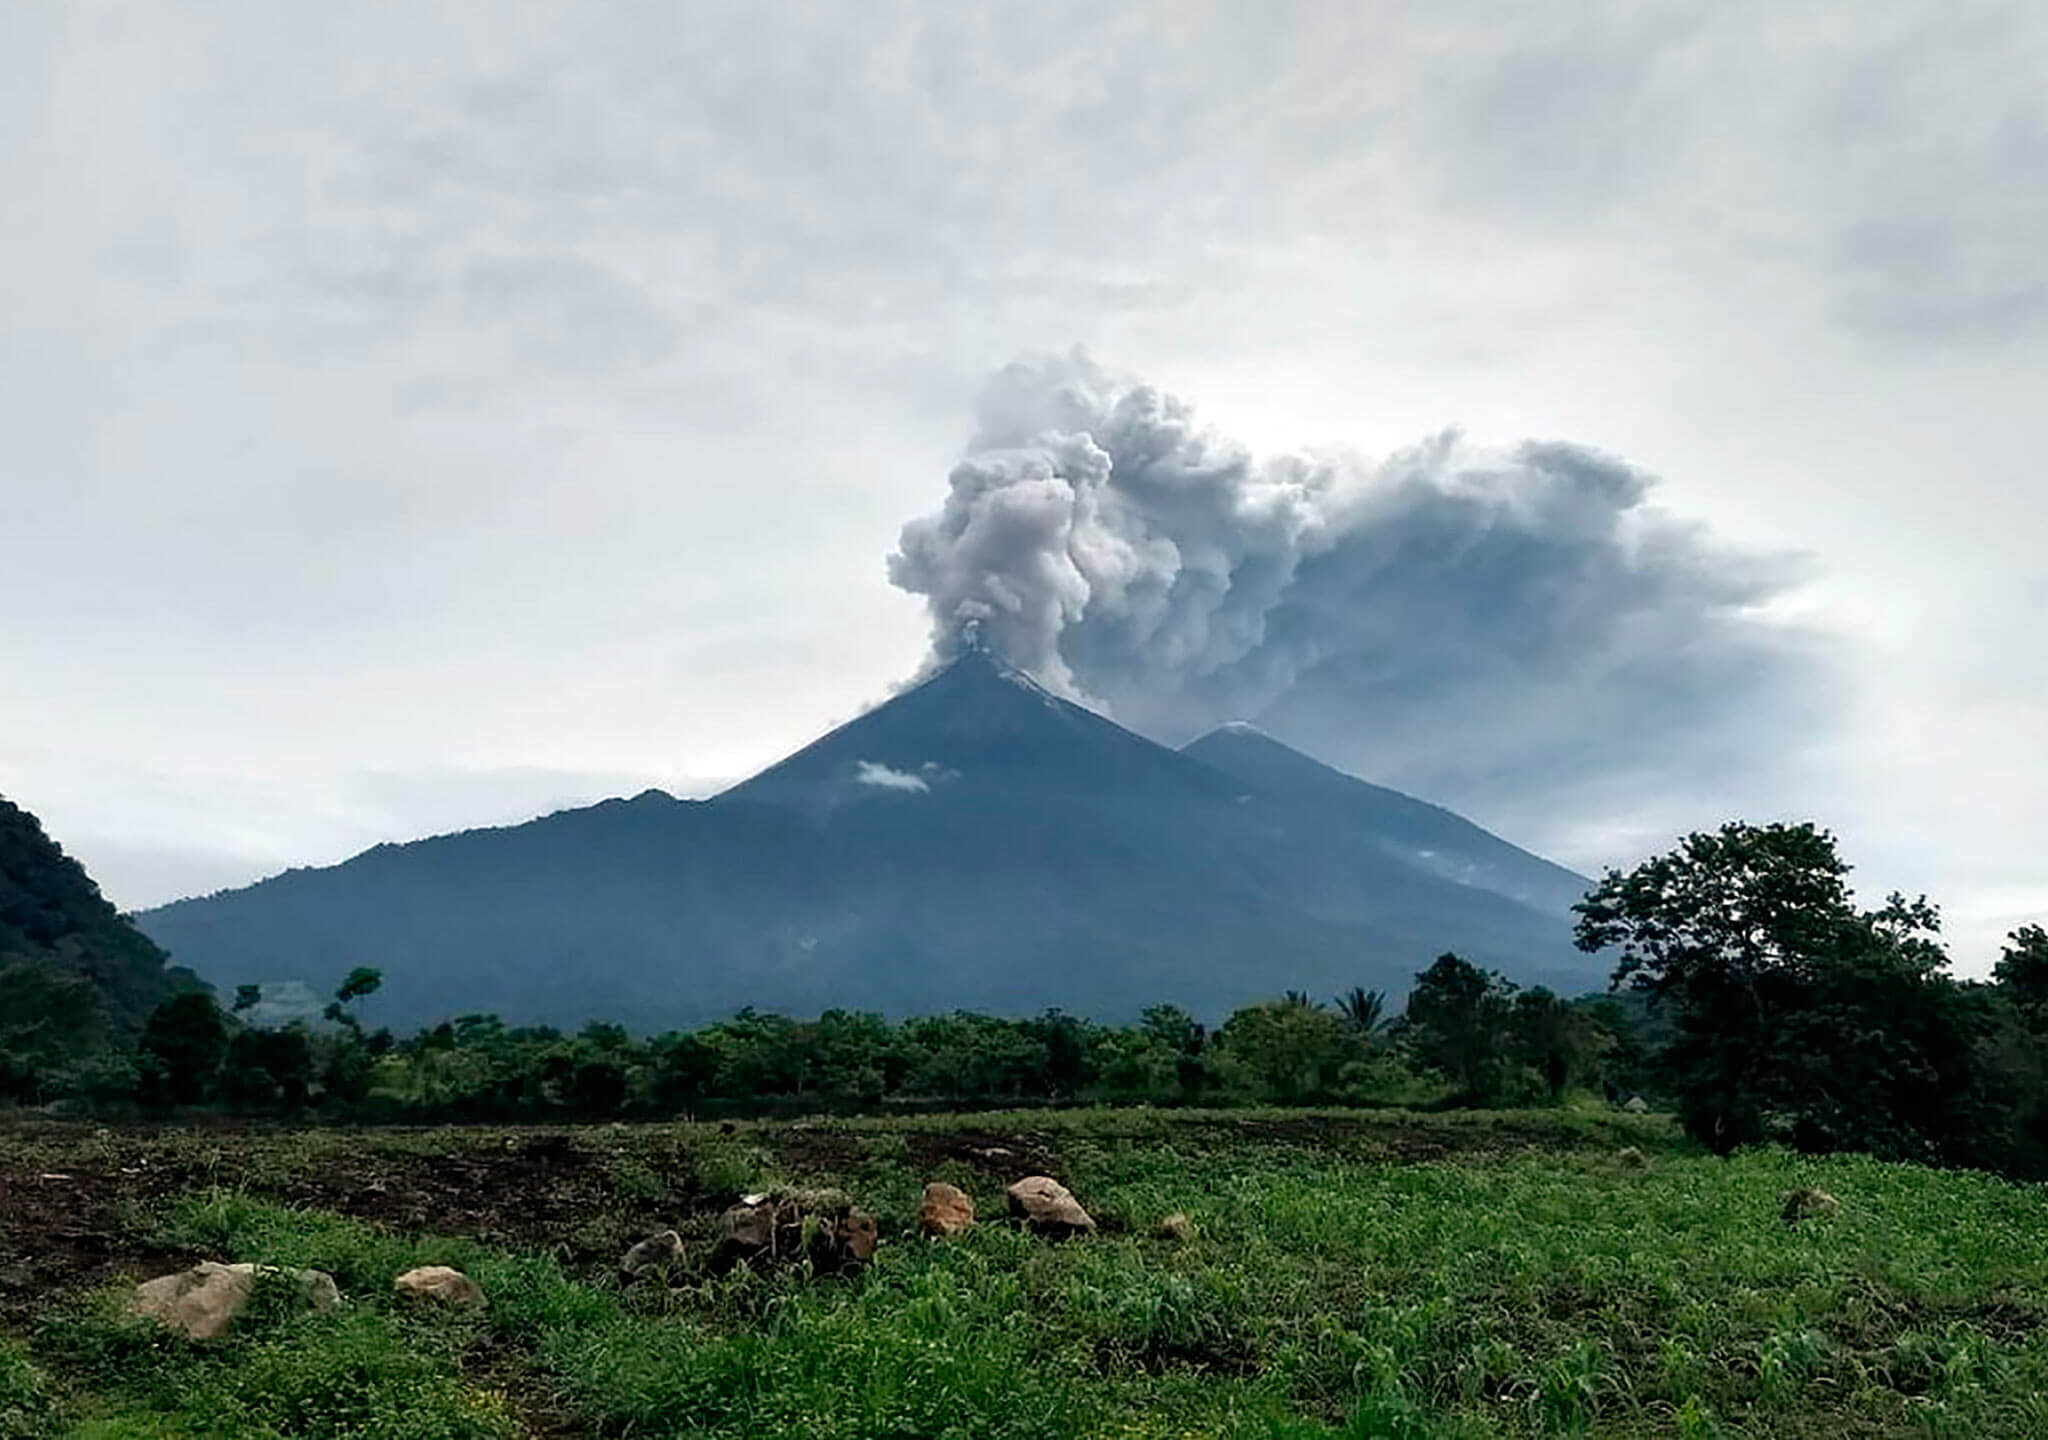 La primera erupción violenta duró 16 horas